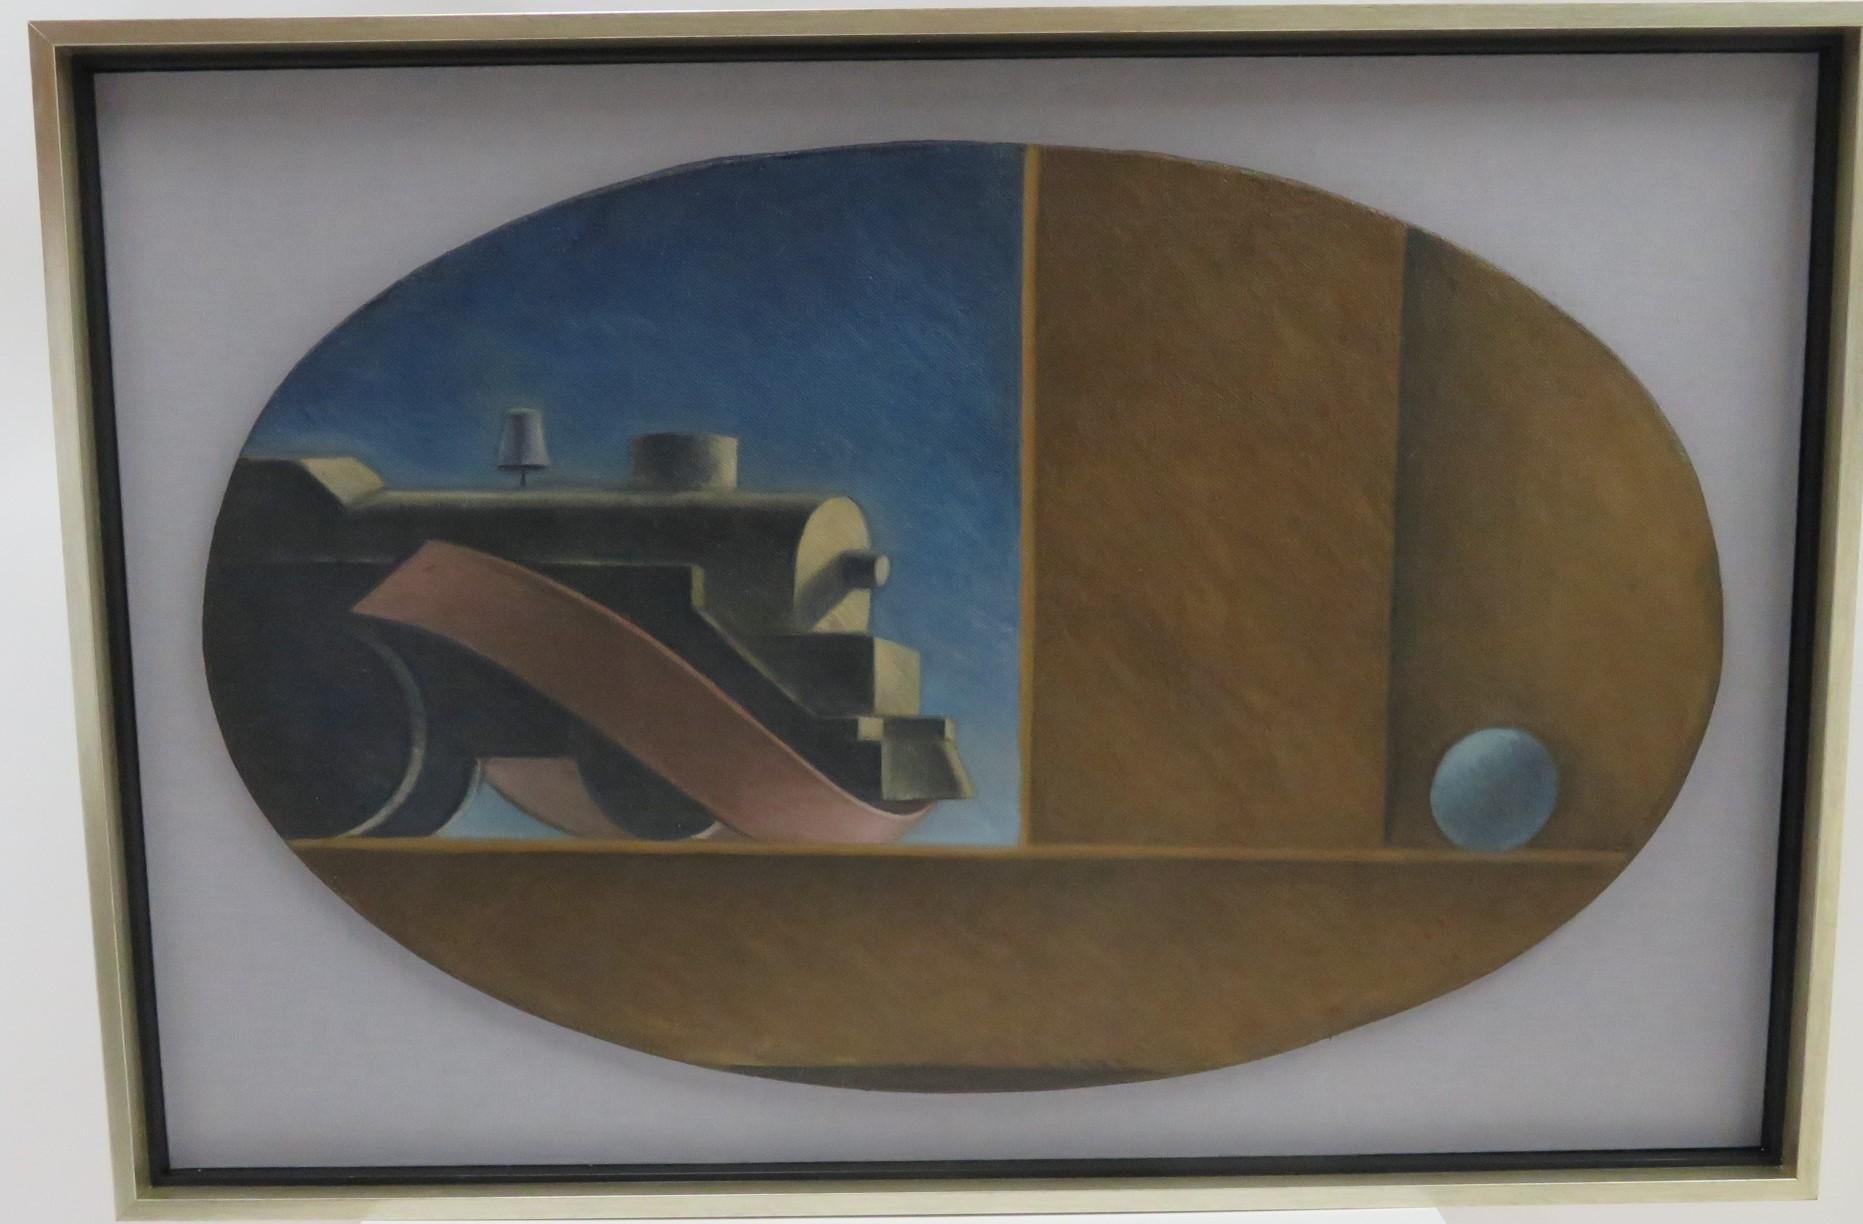 Drei feine 1930er/1940er WPA-Ära Öl auf Leinwand ovale Gemälde von Zügen mit einem Band und schwimmenden Ball.  Diese drei von Thomas Hart Benton inspirierten Bilder sind unsigniert und wurden säurefrei schwebend auf feines Leinen in rechteckigen